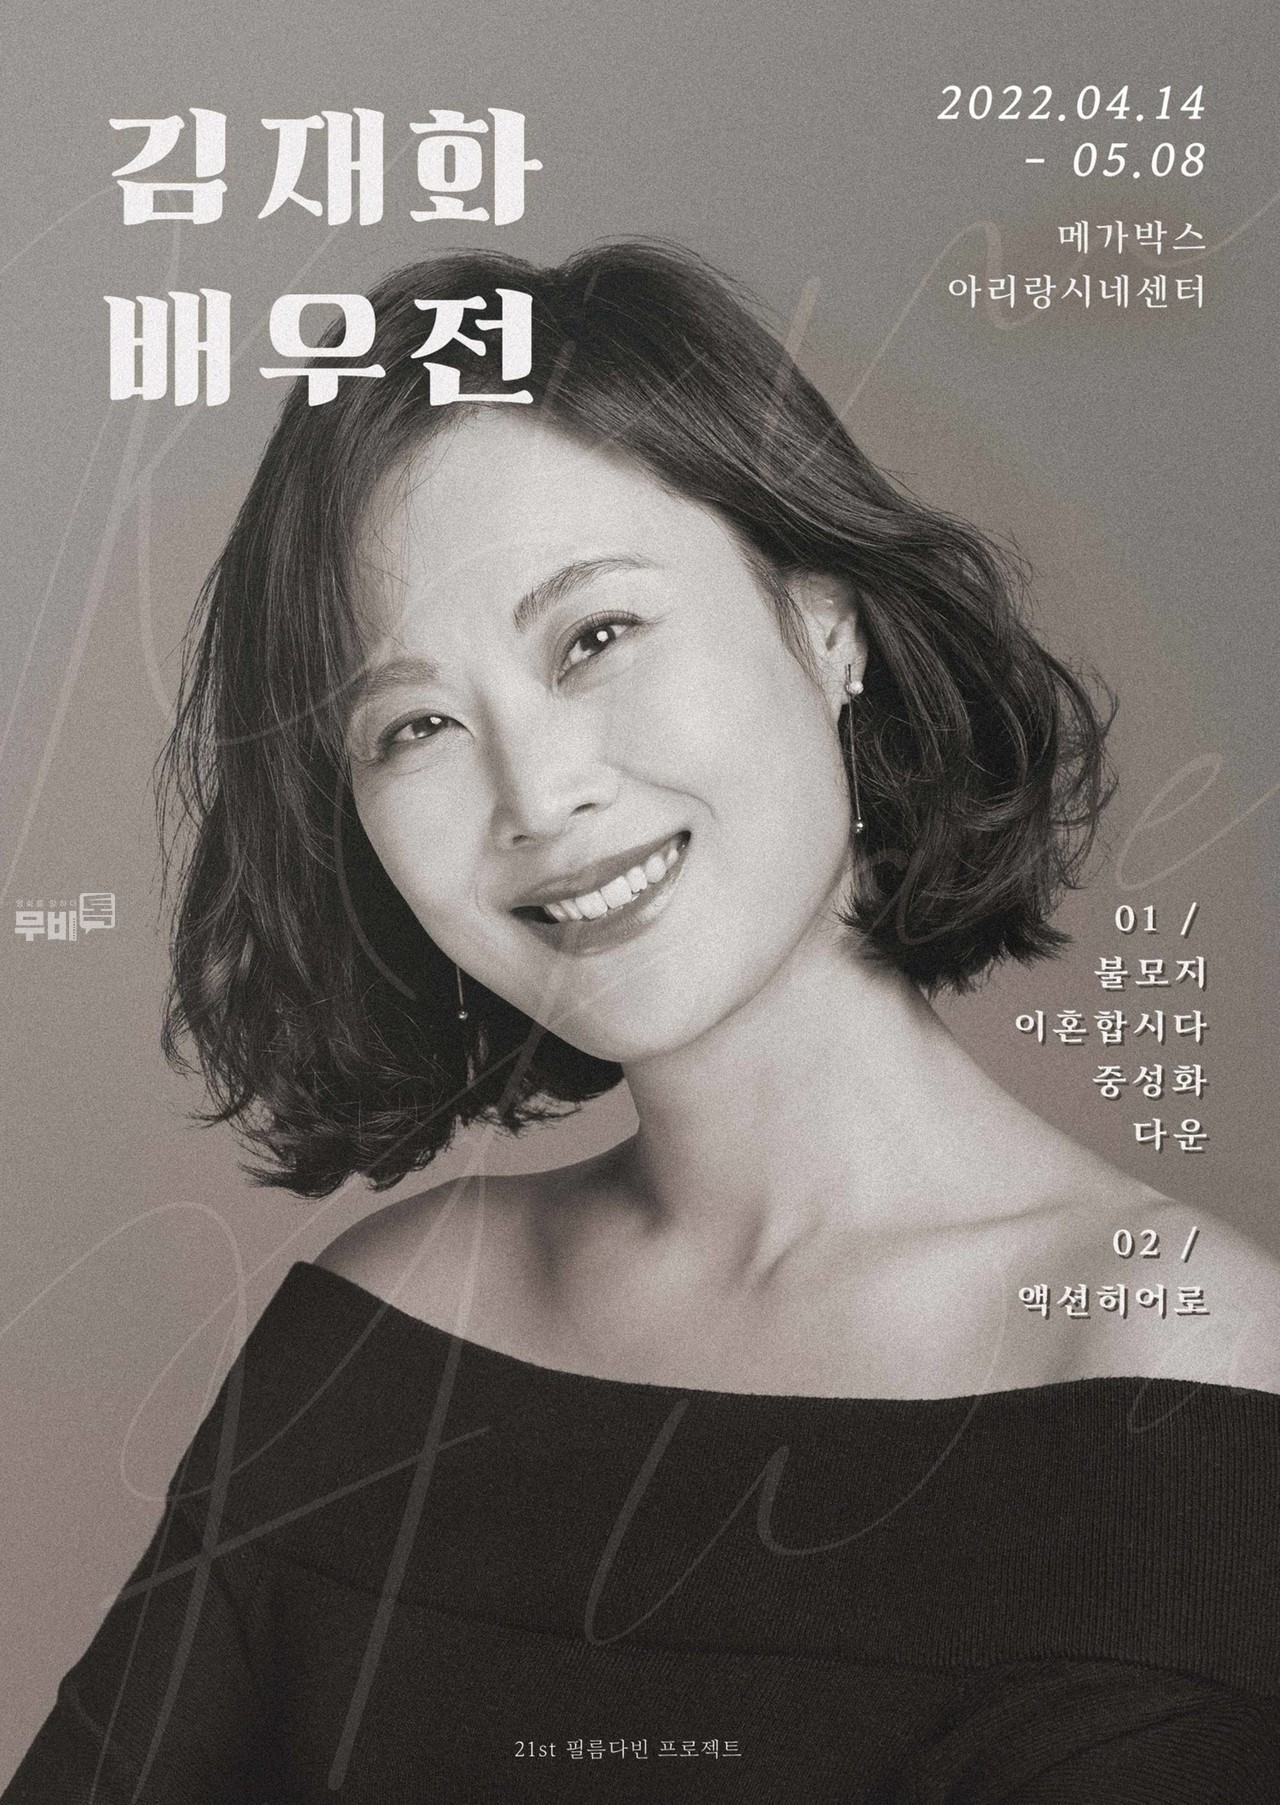 포스터= 김재화 배우전(21ST 필름다빈 기획전 프로젝트)